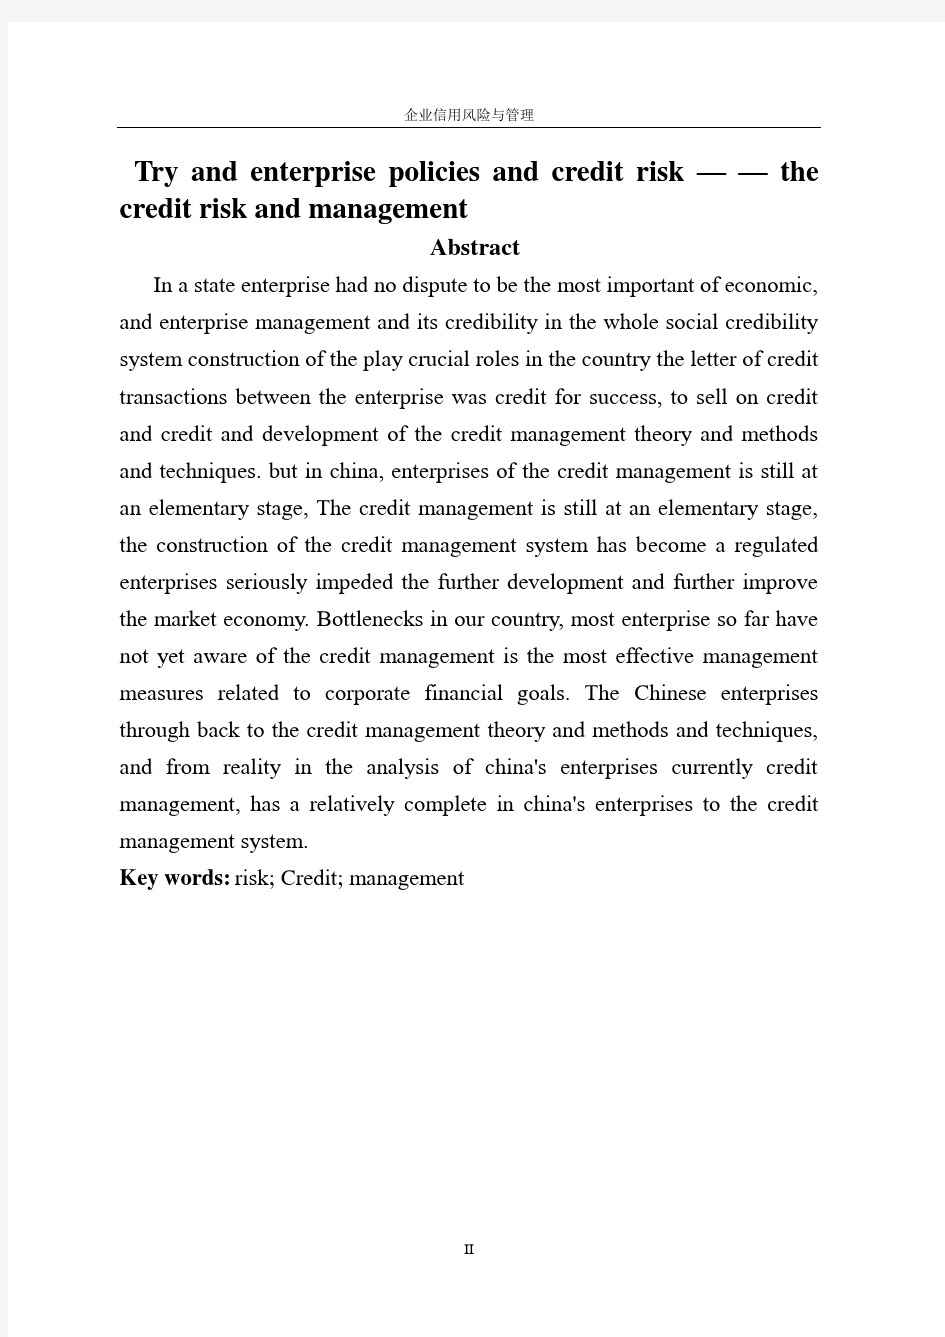 企业信用风险与管理